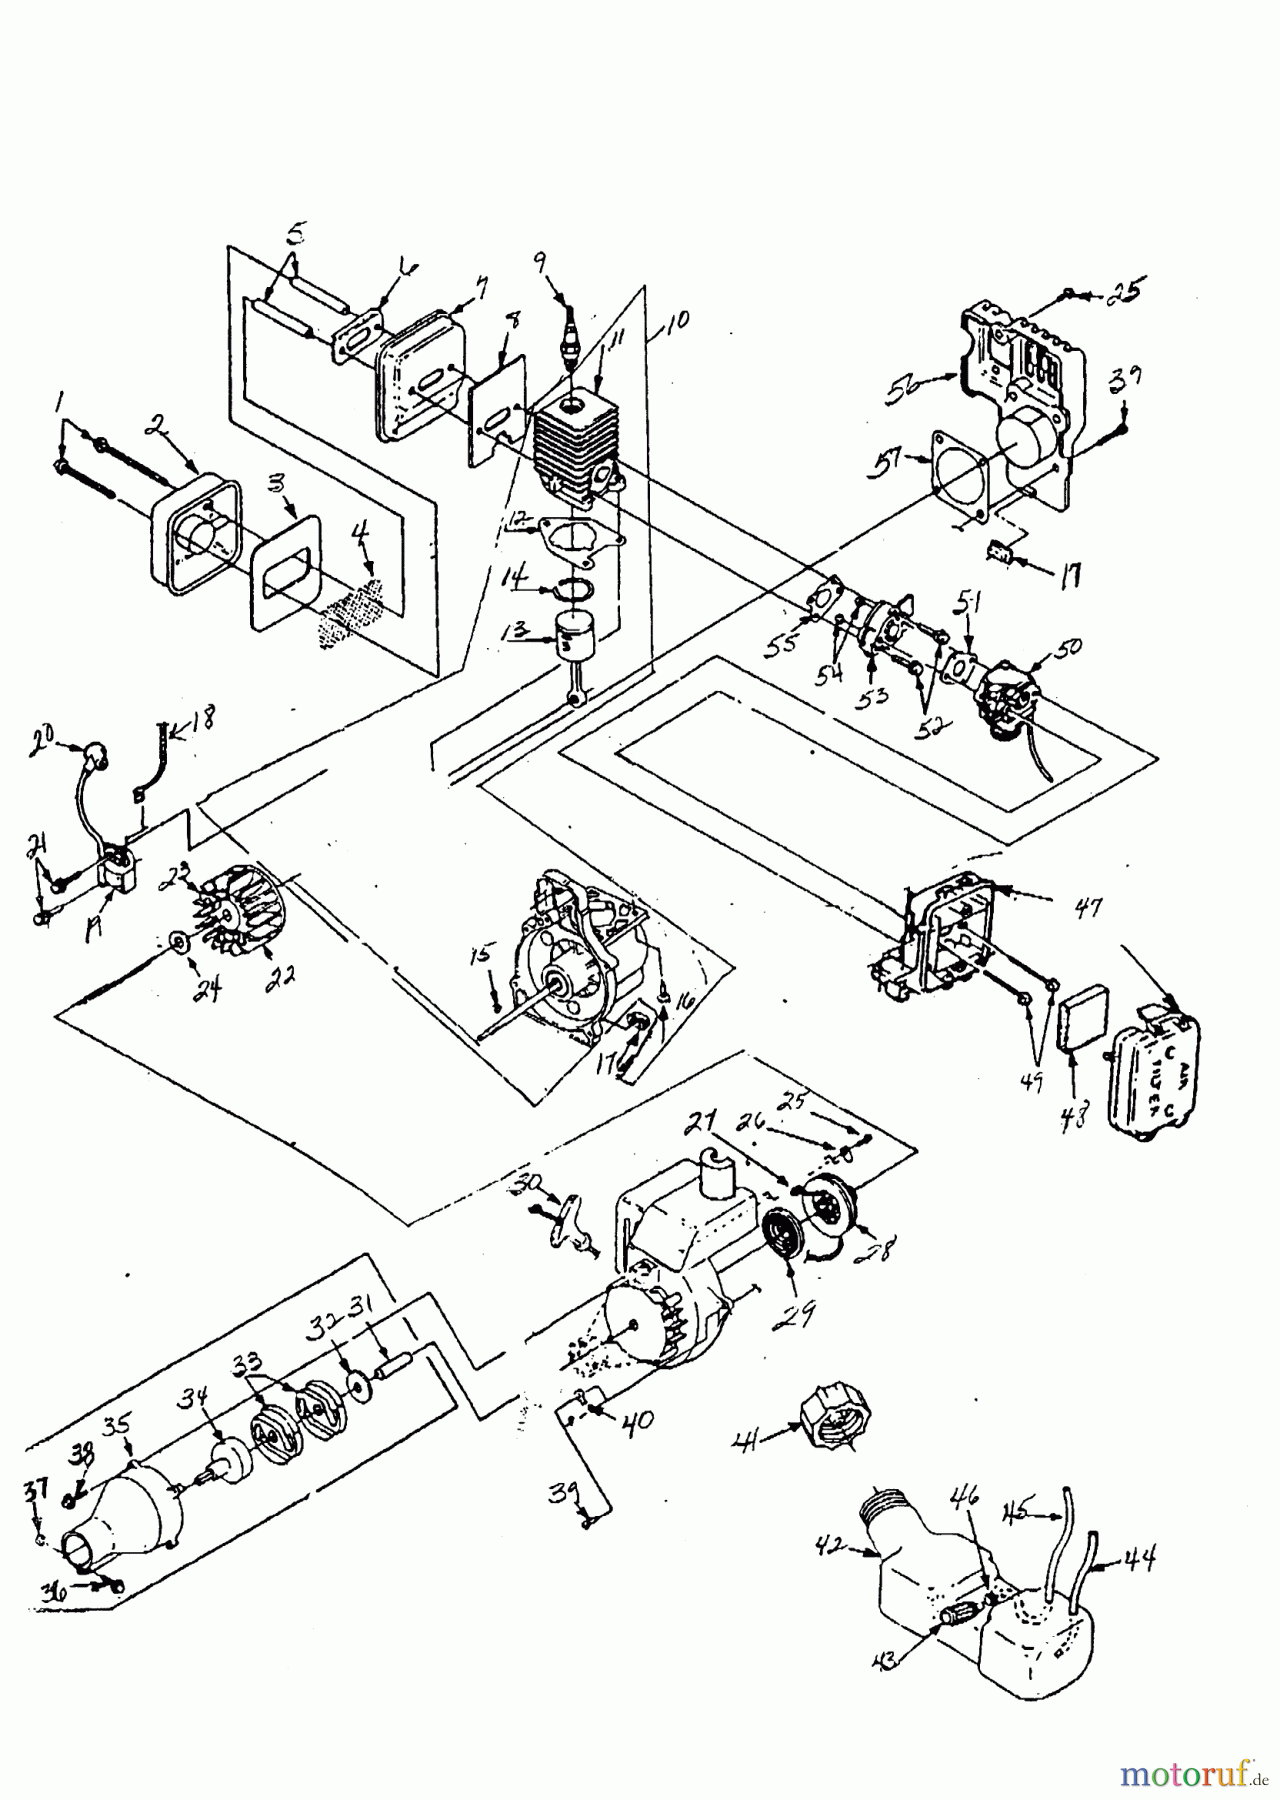  AL-KO Gartentechnik Motorsensen BC 300 Seite 1